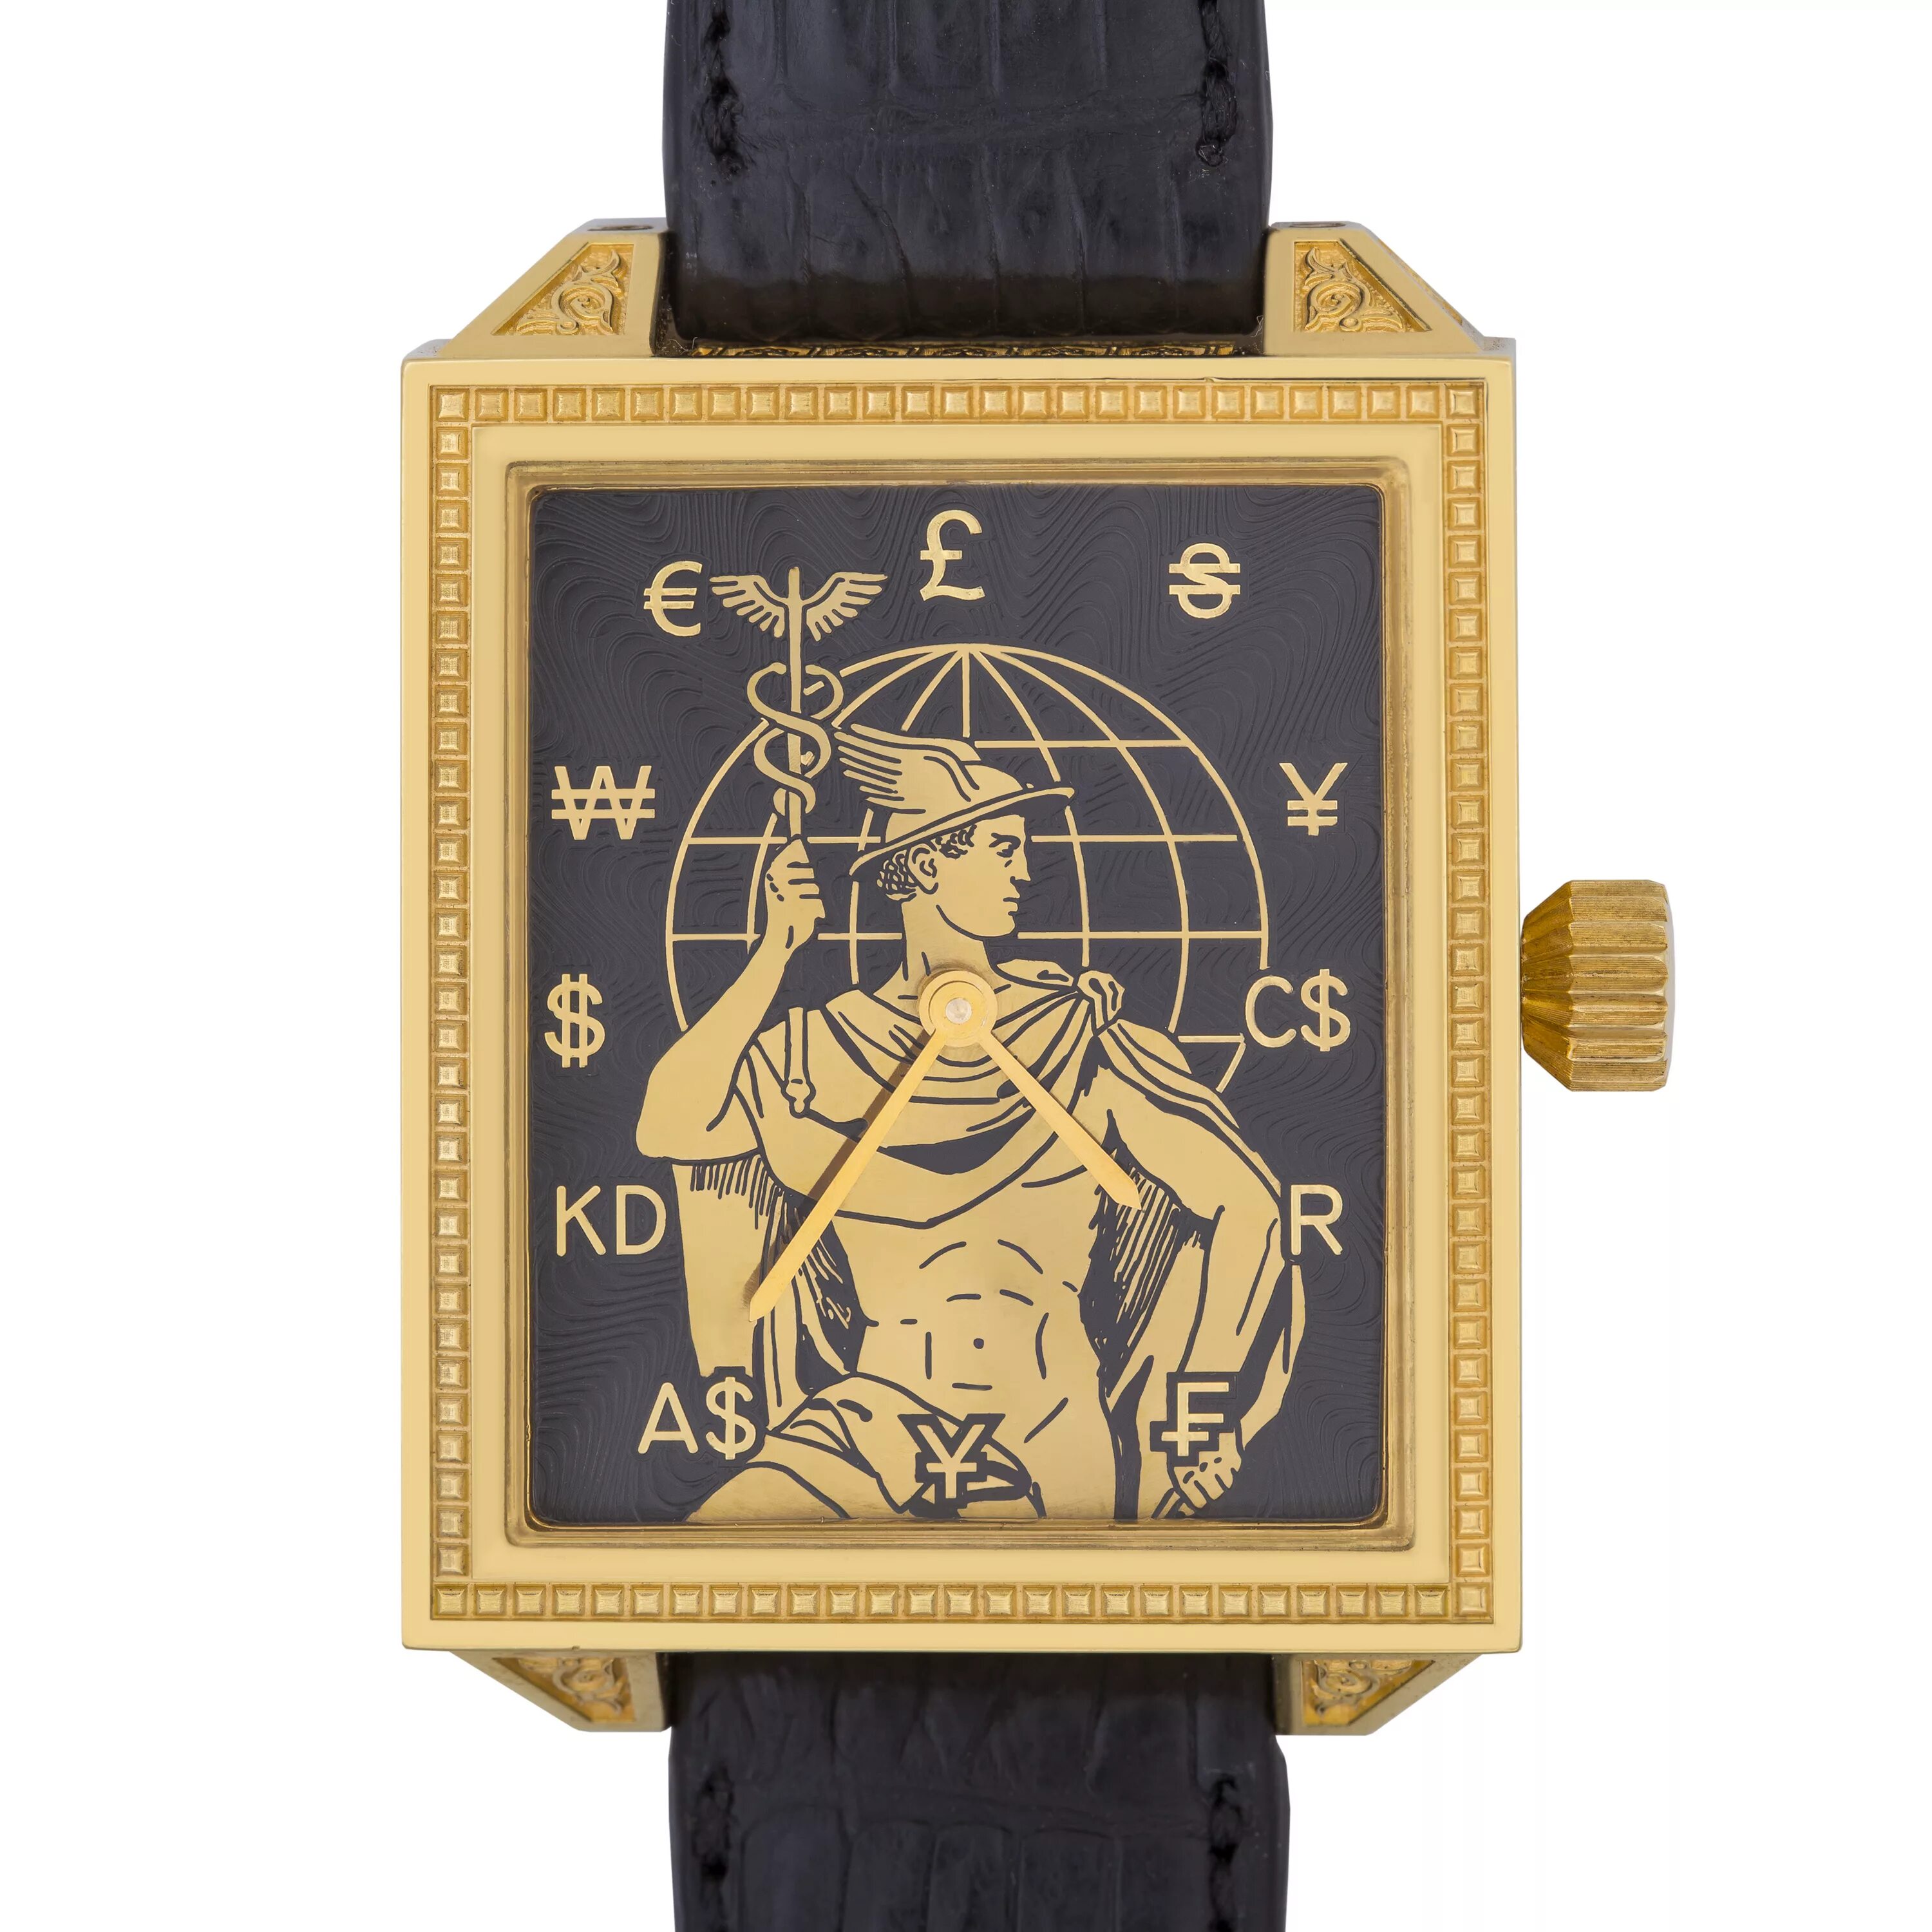 Гермес оне. Часы "Гермес". Часы Hermes m037. Часы Hermes Paris 3523 Gold. Часы Hermes механические лимитированные 170шт.